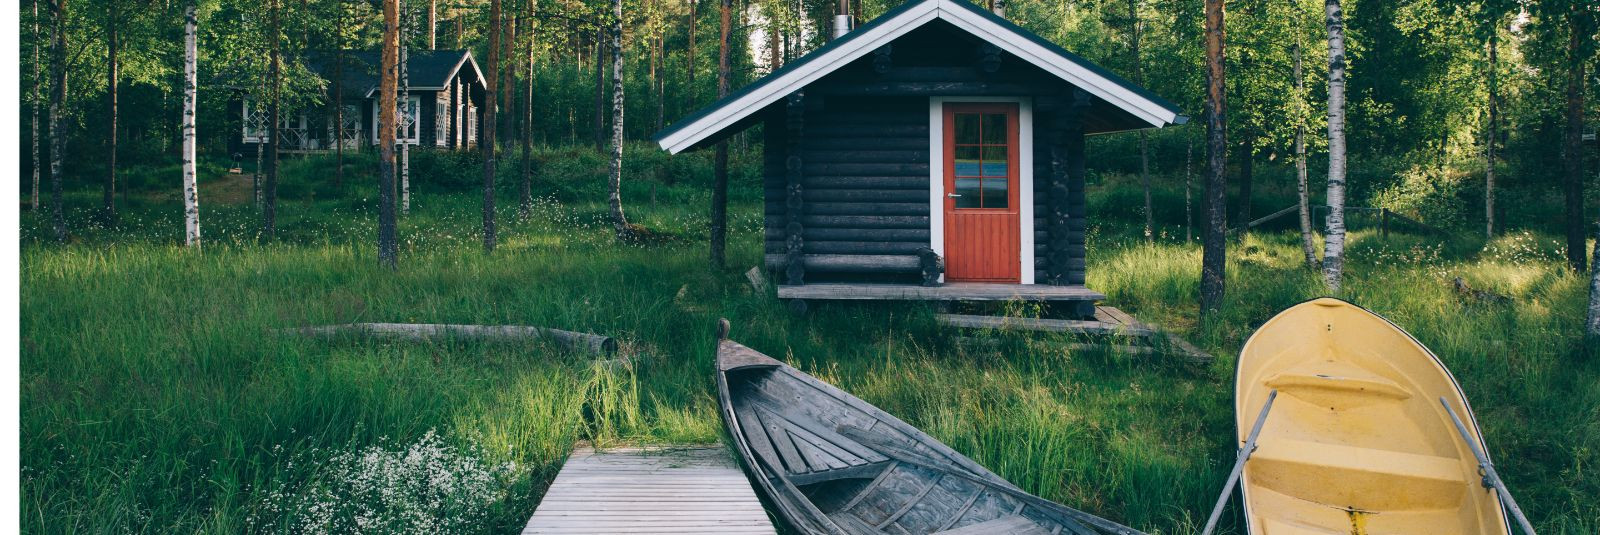 Põhjamaade saunakultuur on pikka aega pakkunud inimestele enamat kui lihtsalt füüsilist kuumust. See on saanud tähendusrikkaks rituaaliks, kus ühinevad keha ja 